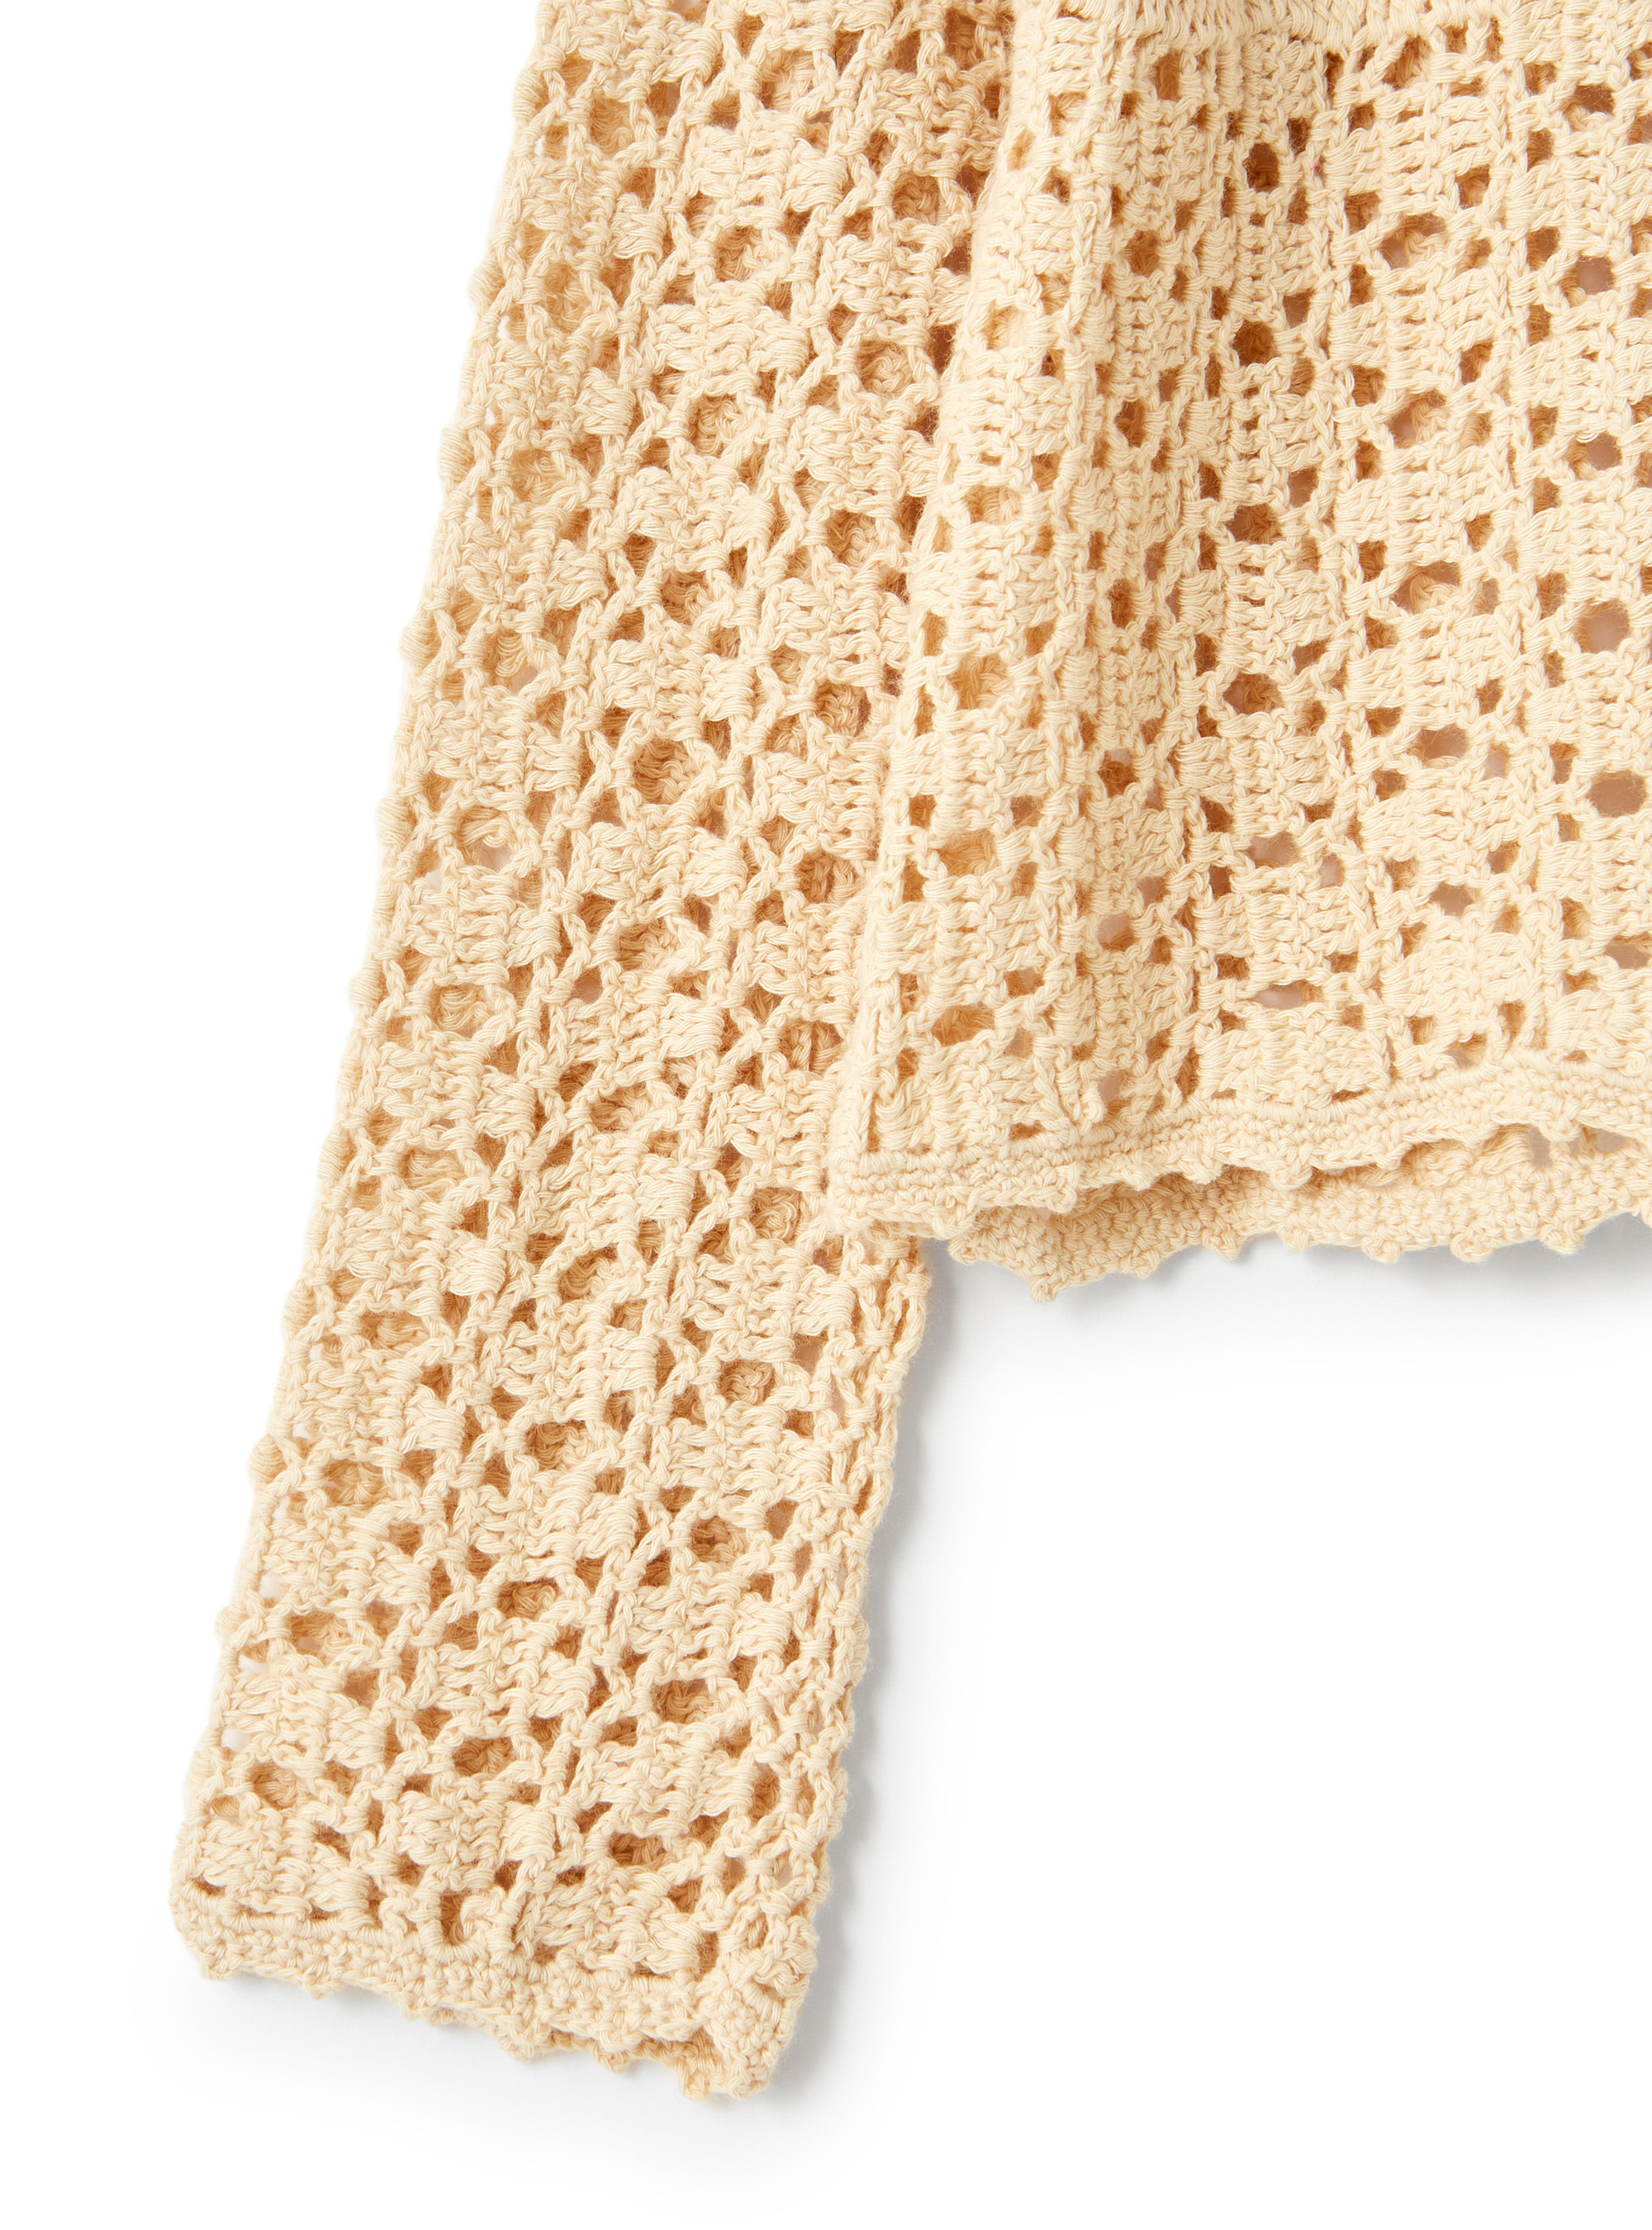 Cardigan crochet in cotone organico - Beige | Il Gufo